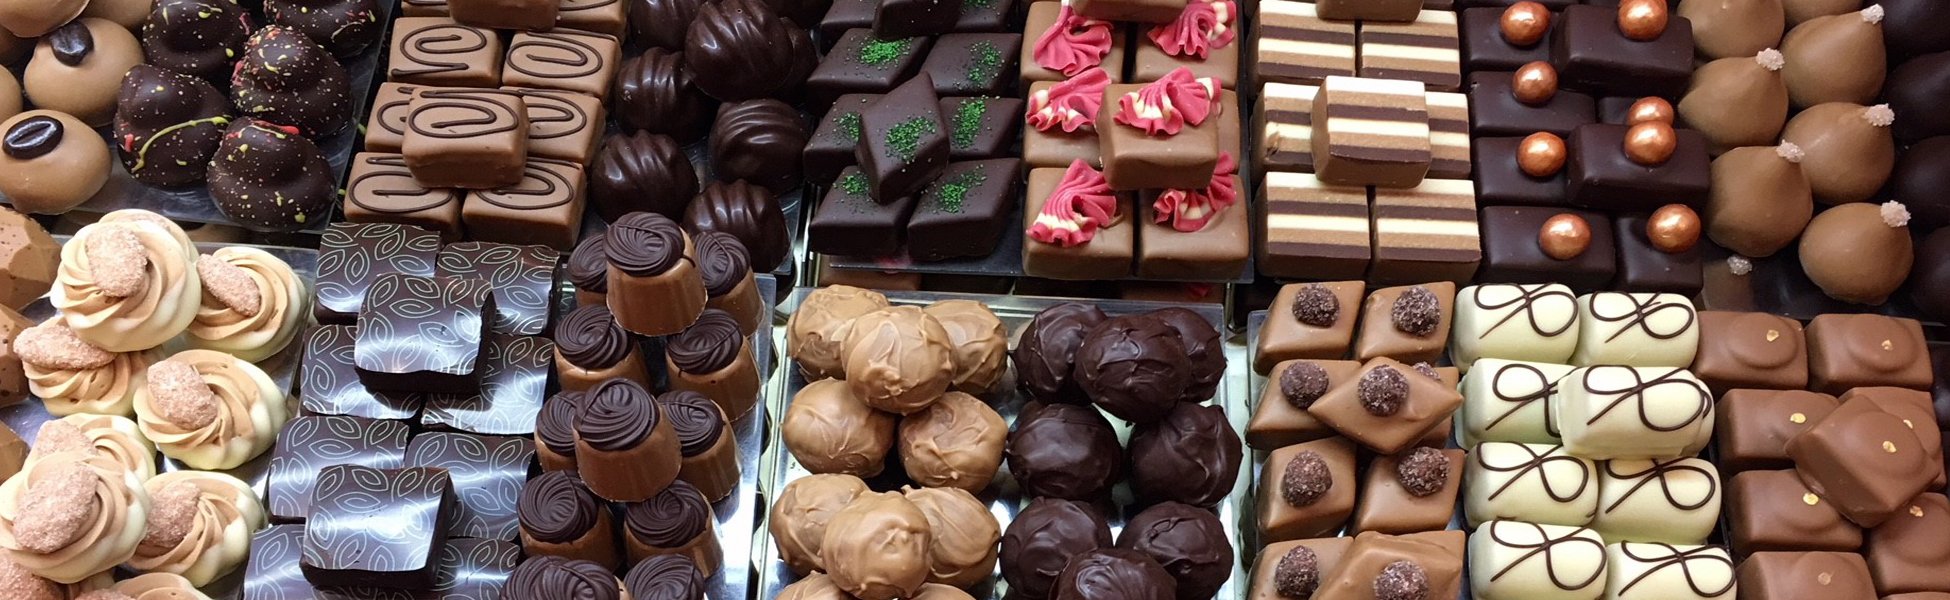 Liefde voor chocolade<br />en bonbons…